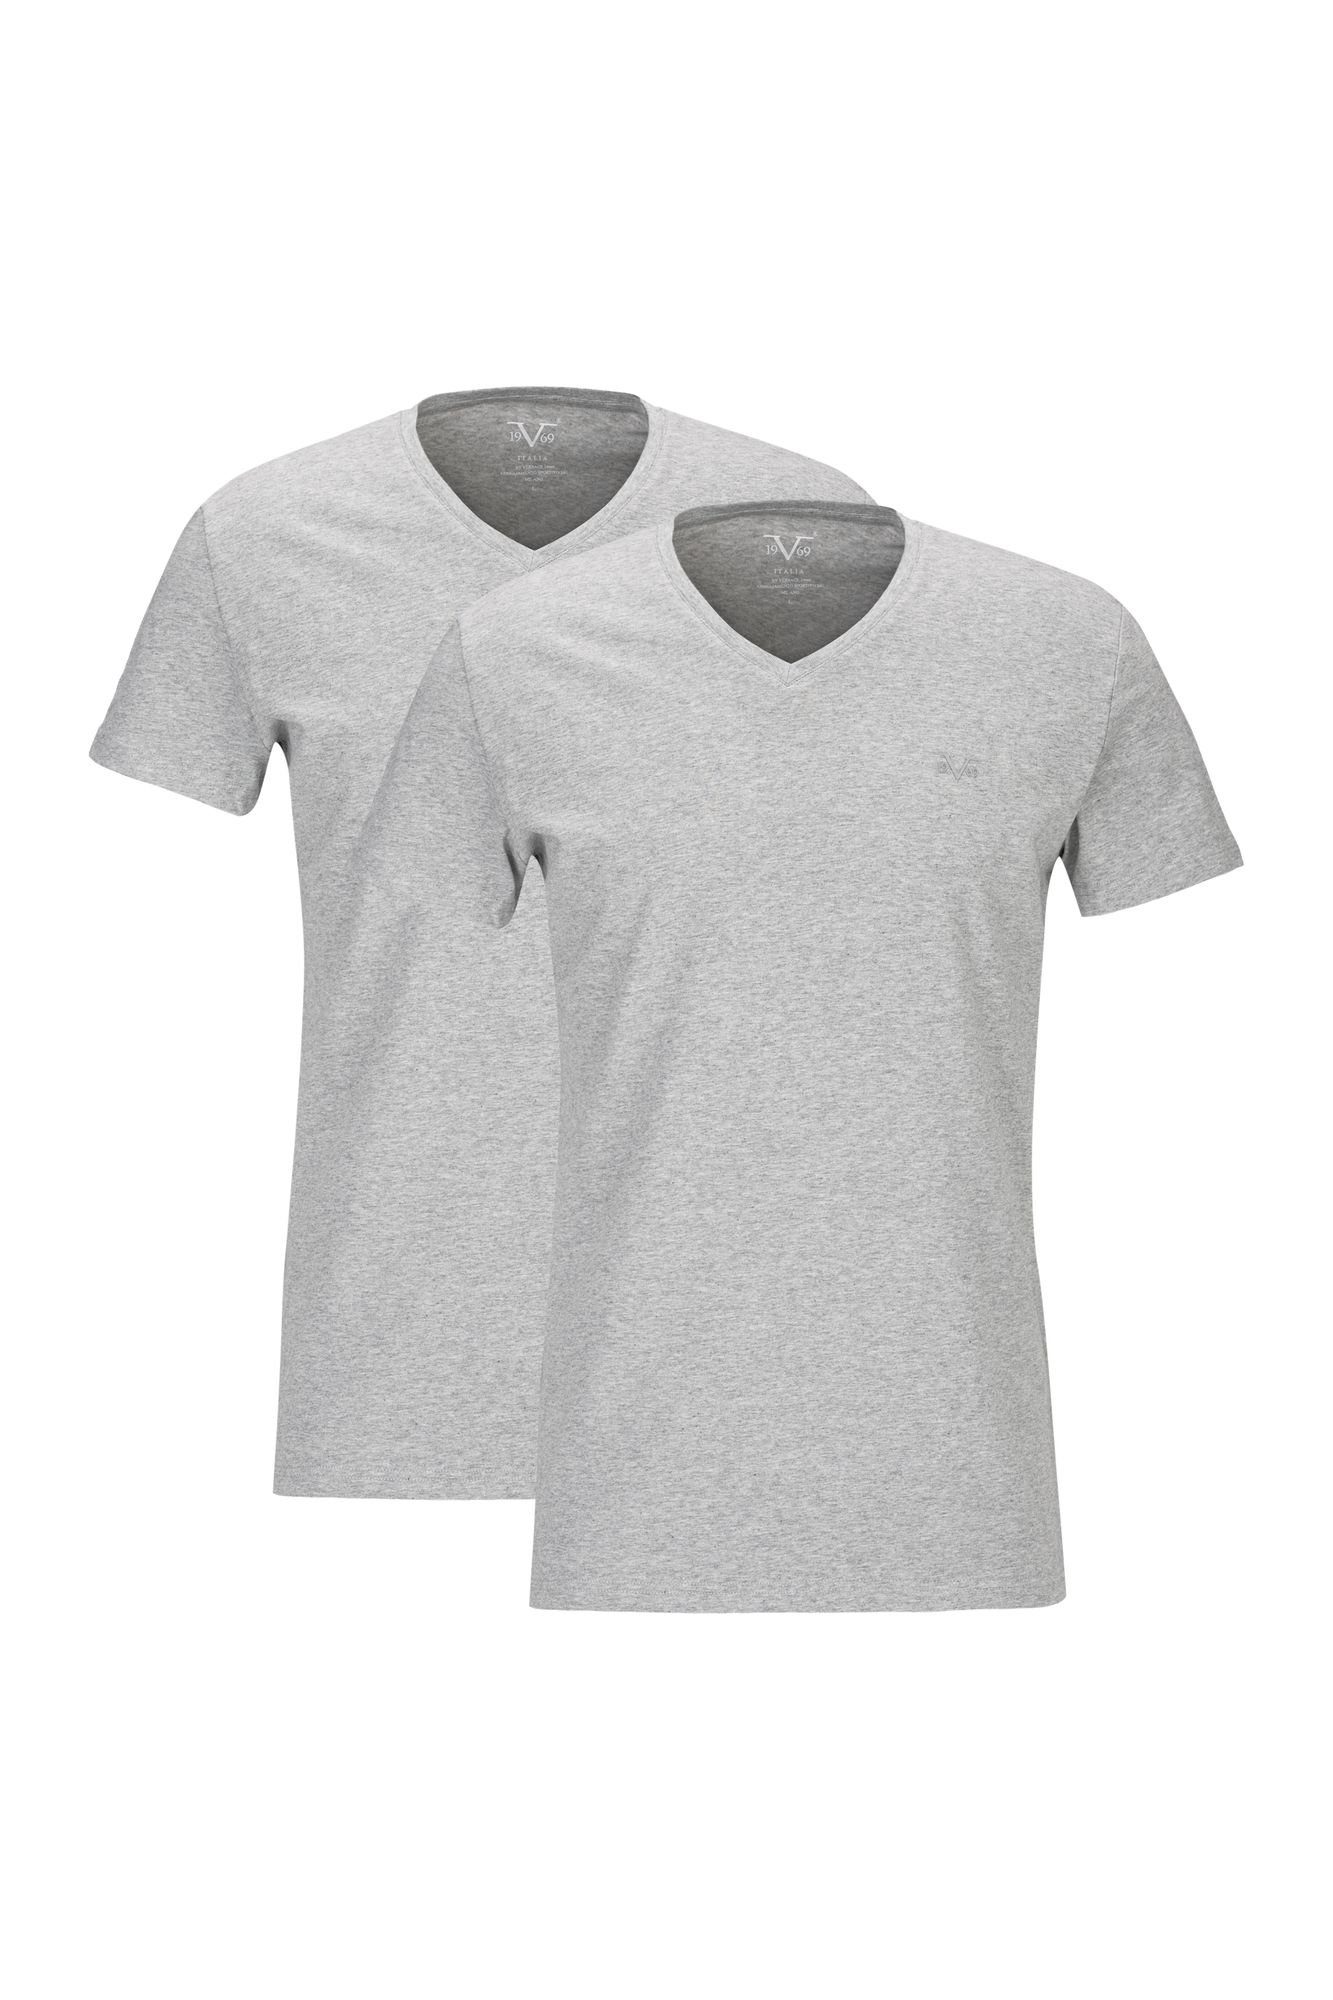 19V69 Italia by Versace T-Shirt Unterziehshirt Unterhemd mit Kurzarm V-Ausschnitt für Herren mit einem kleinem Ton-in-Ton Logo auf der Brust grau | V-Shirts